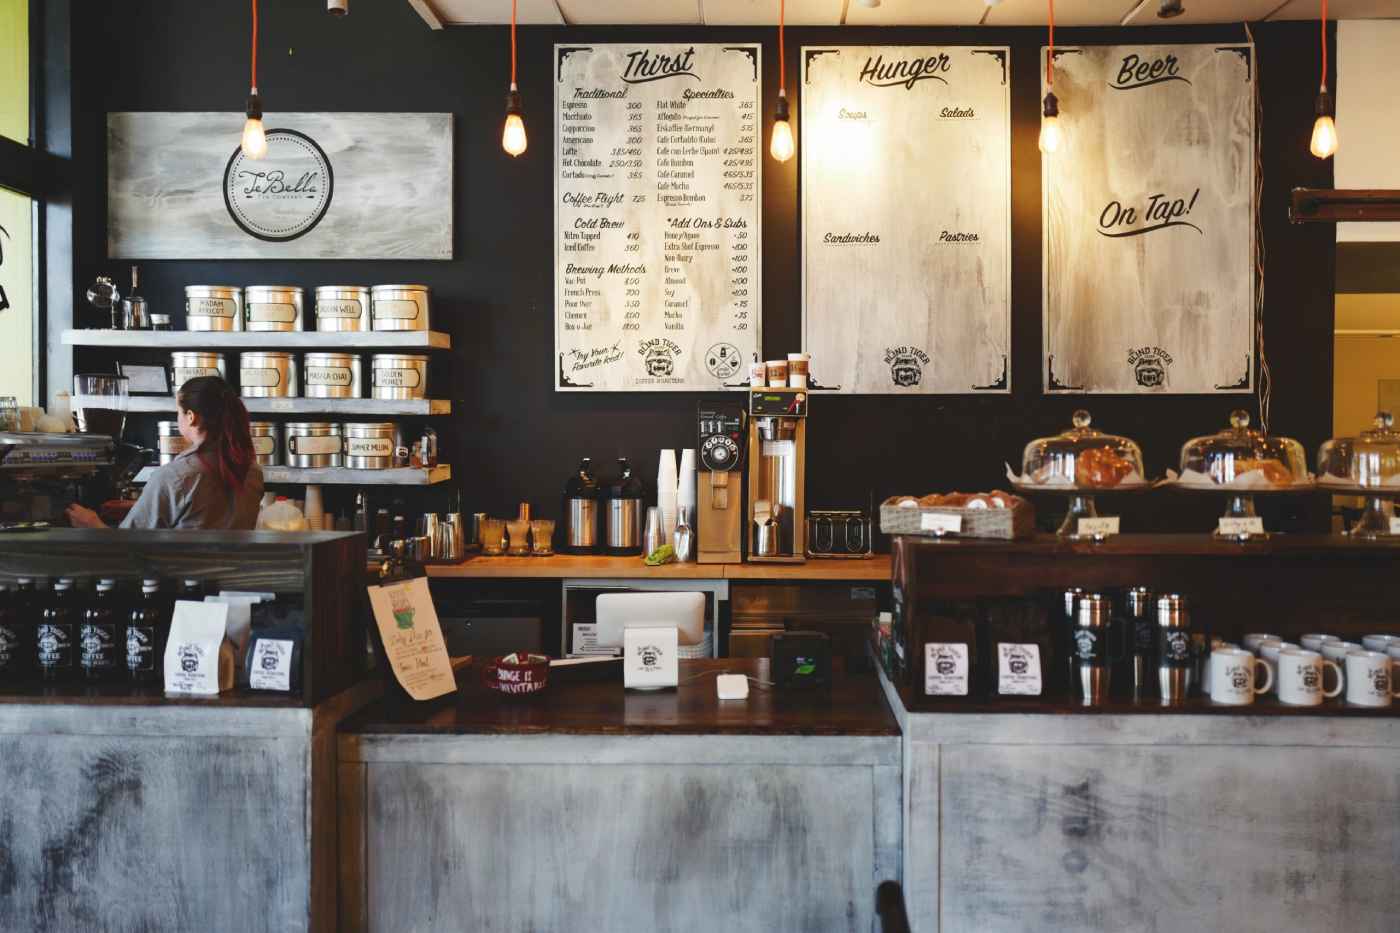 Café Interiors and branding